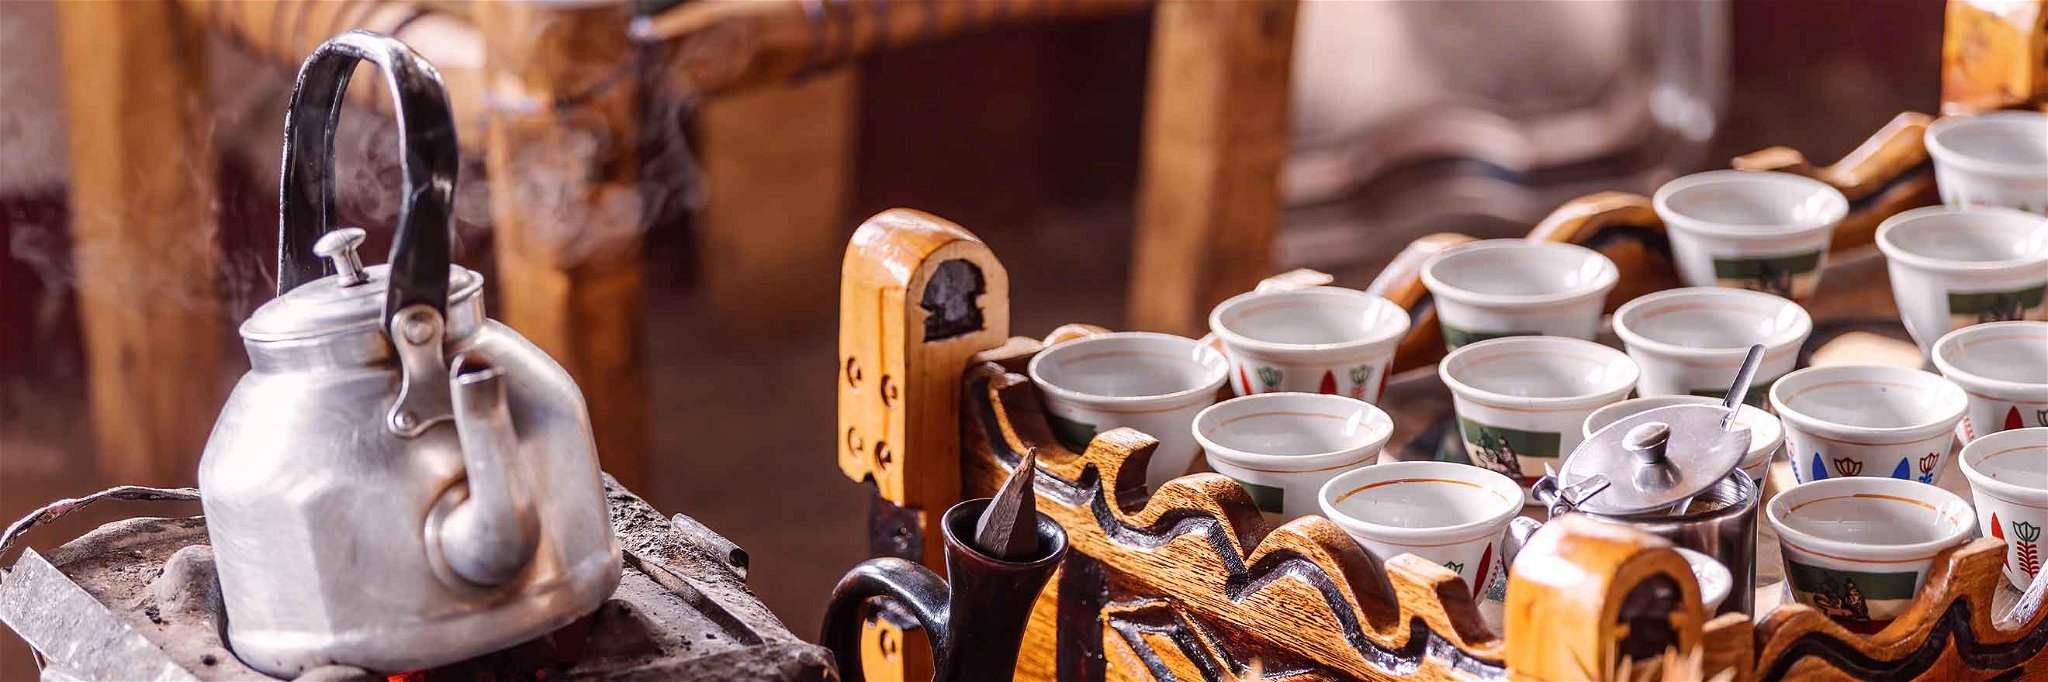 Wer in Äthiopien zum Kaffee eingeladen wird, sollte Zeit mitbringen: Das Ritual dauert leicht mehrere Stunden und umfasst einige Runden.